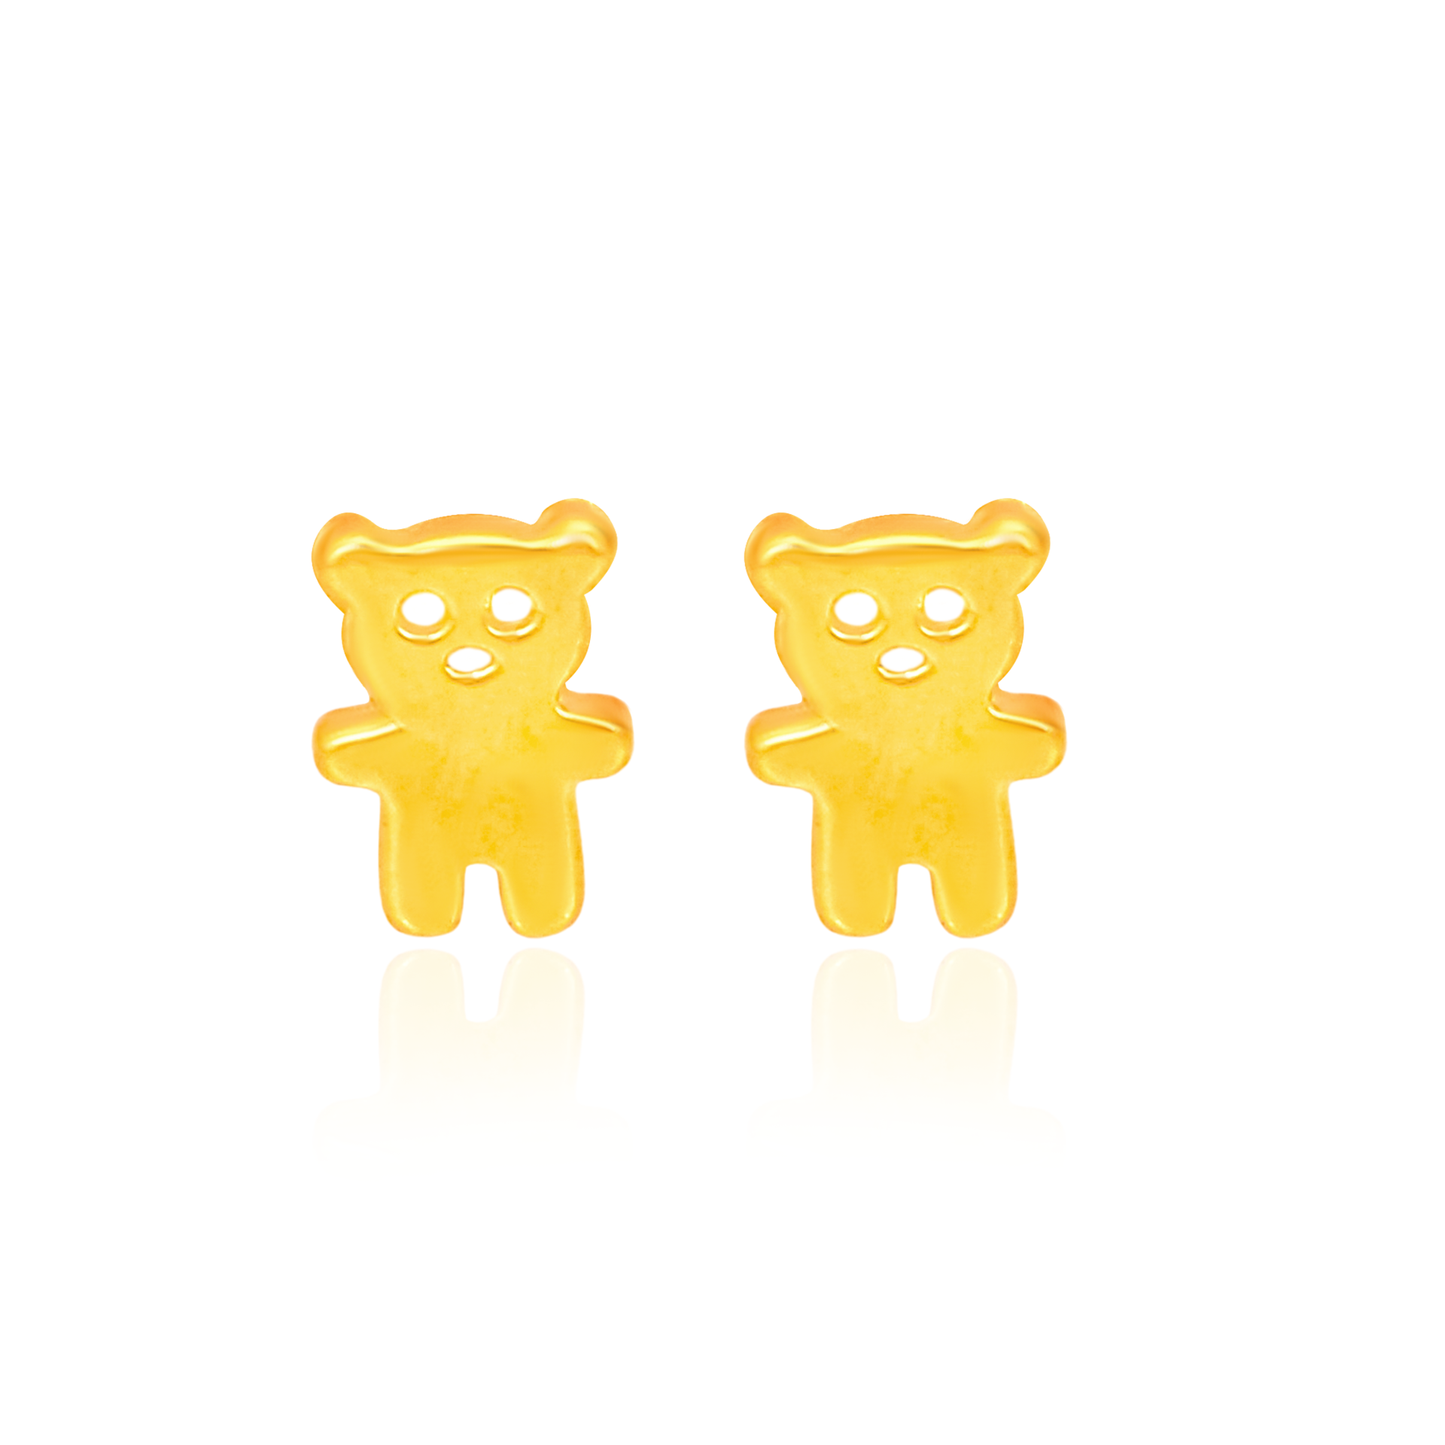 TAKA Jewellery 916 Gold Earrings Bear